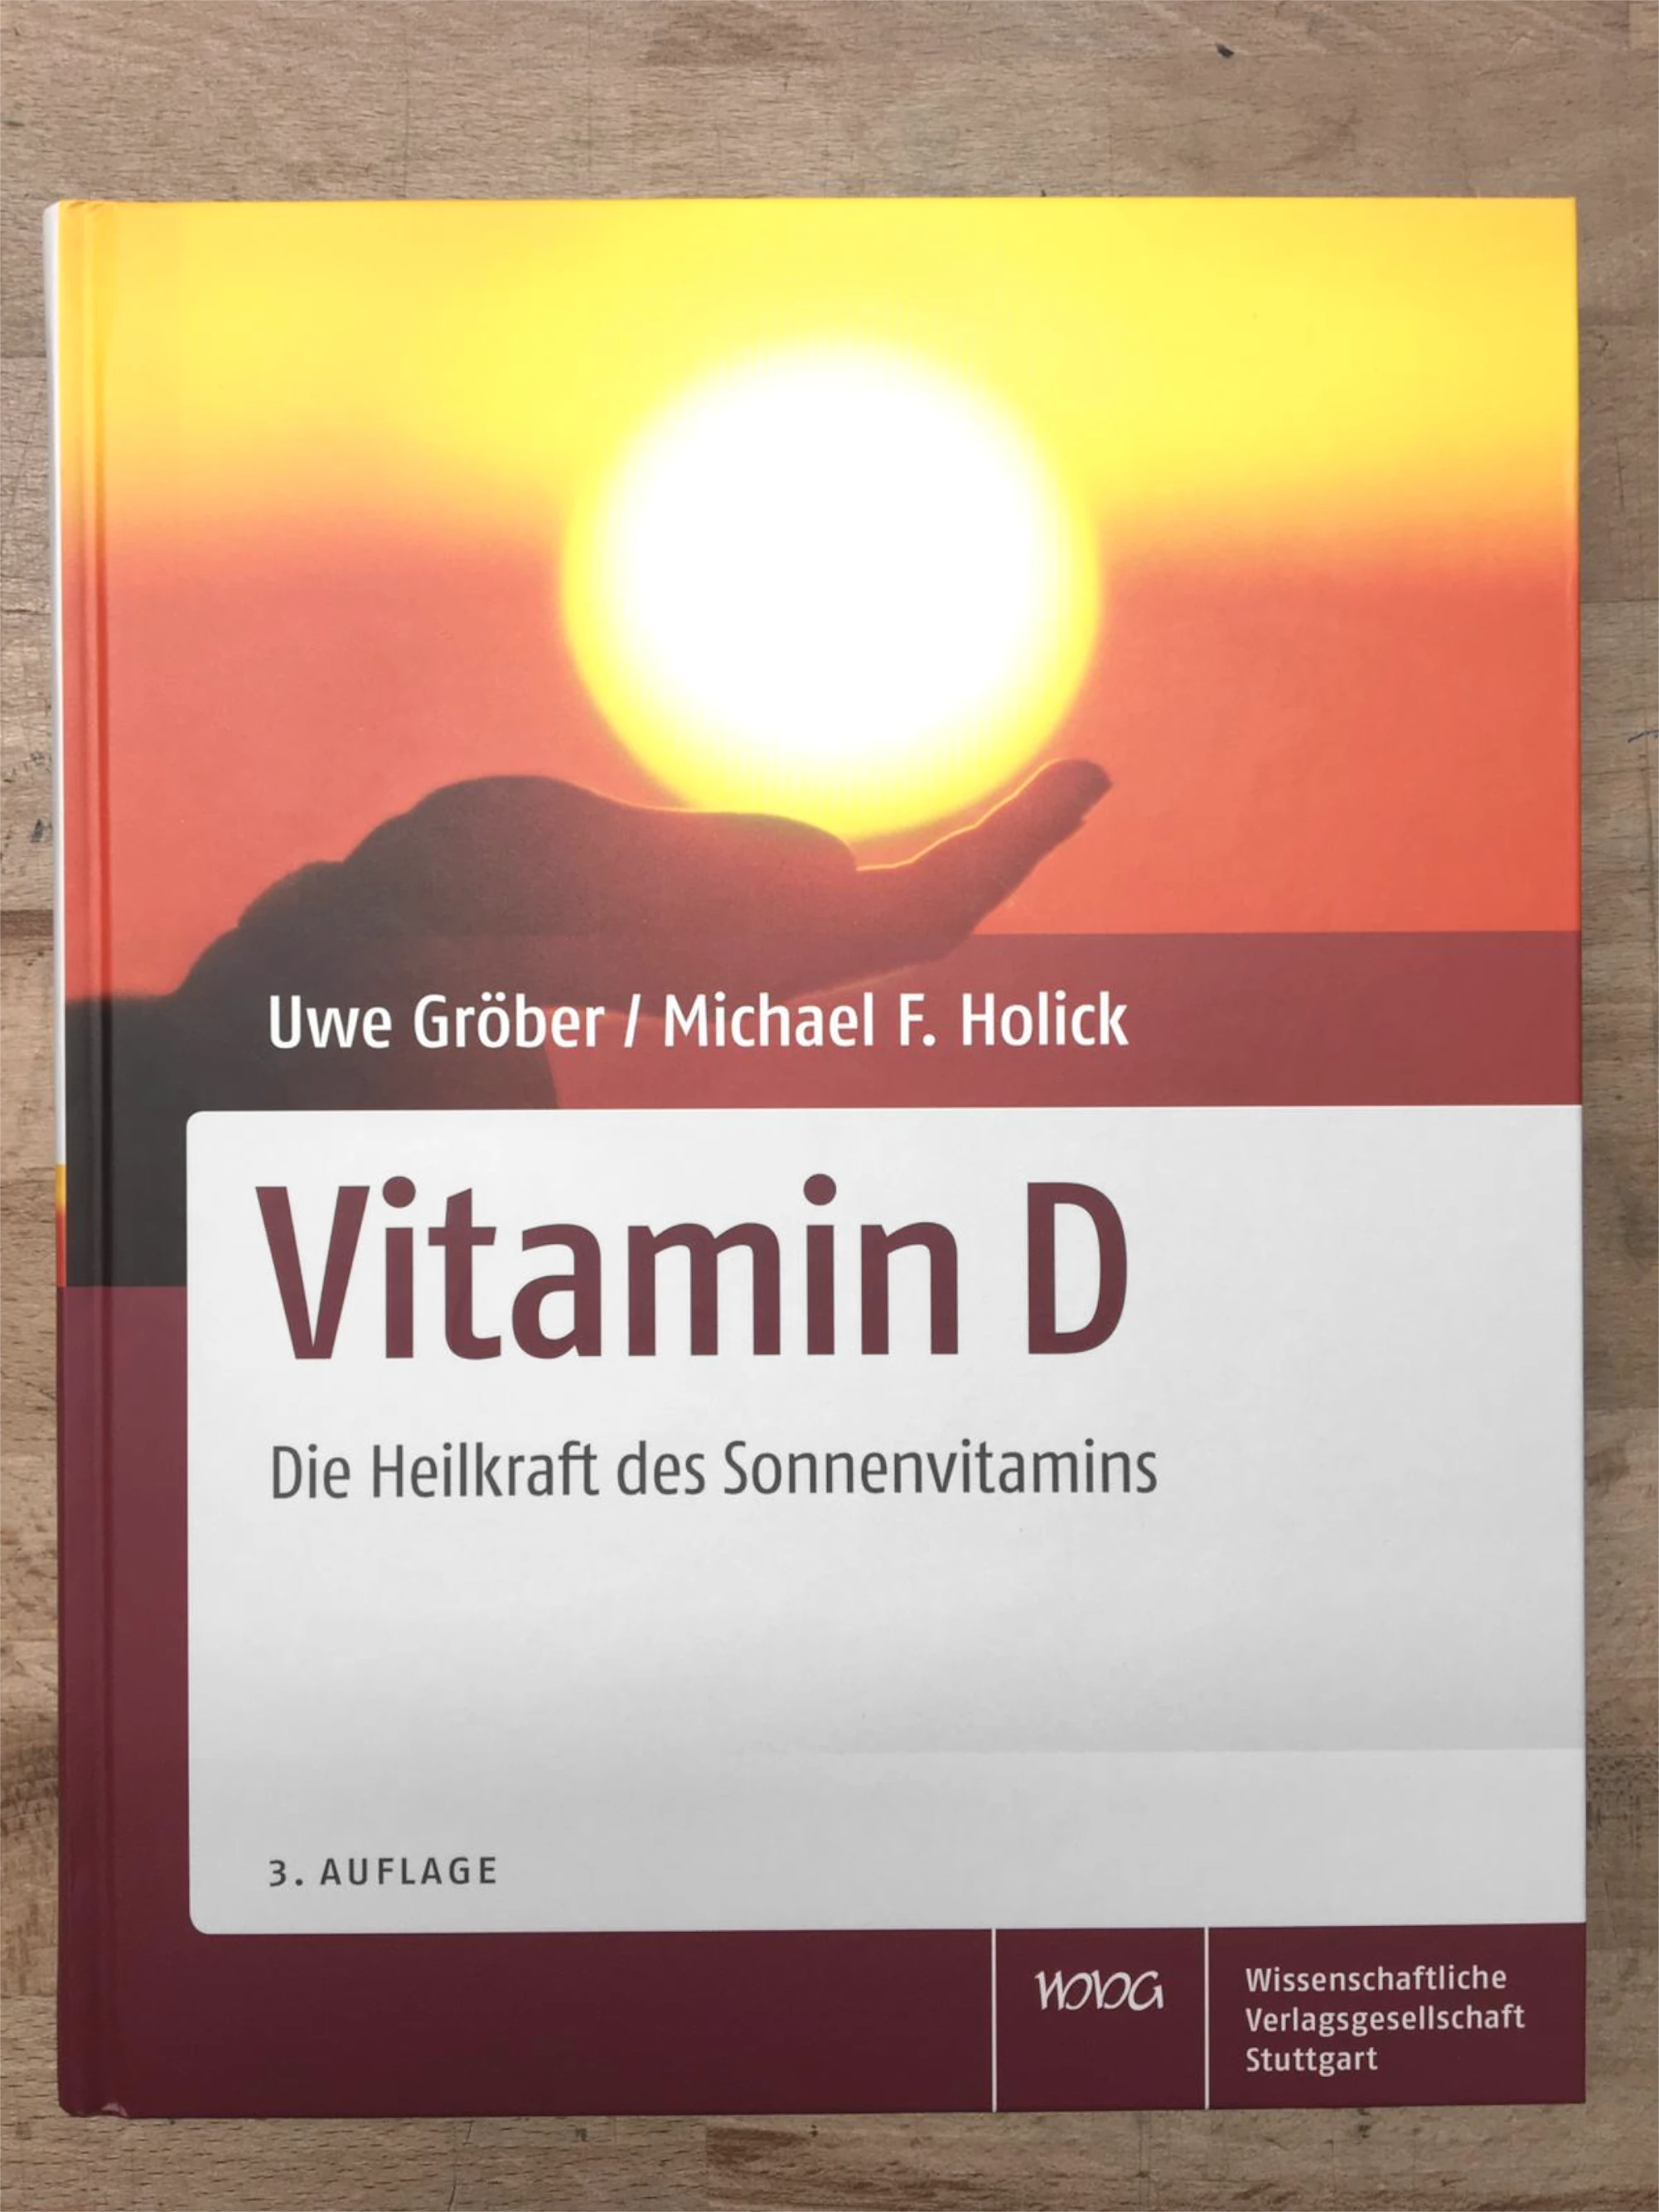 Zu sehen ist die Vorderseite des Buches „Vitamin D“ von Uwe Gröber. Zu sehen ist darauf ein Sonnenuntergang und Hände, die unter der Sonne sind, sodass es aussieht, als würden diese die Sonne halten.